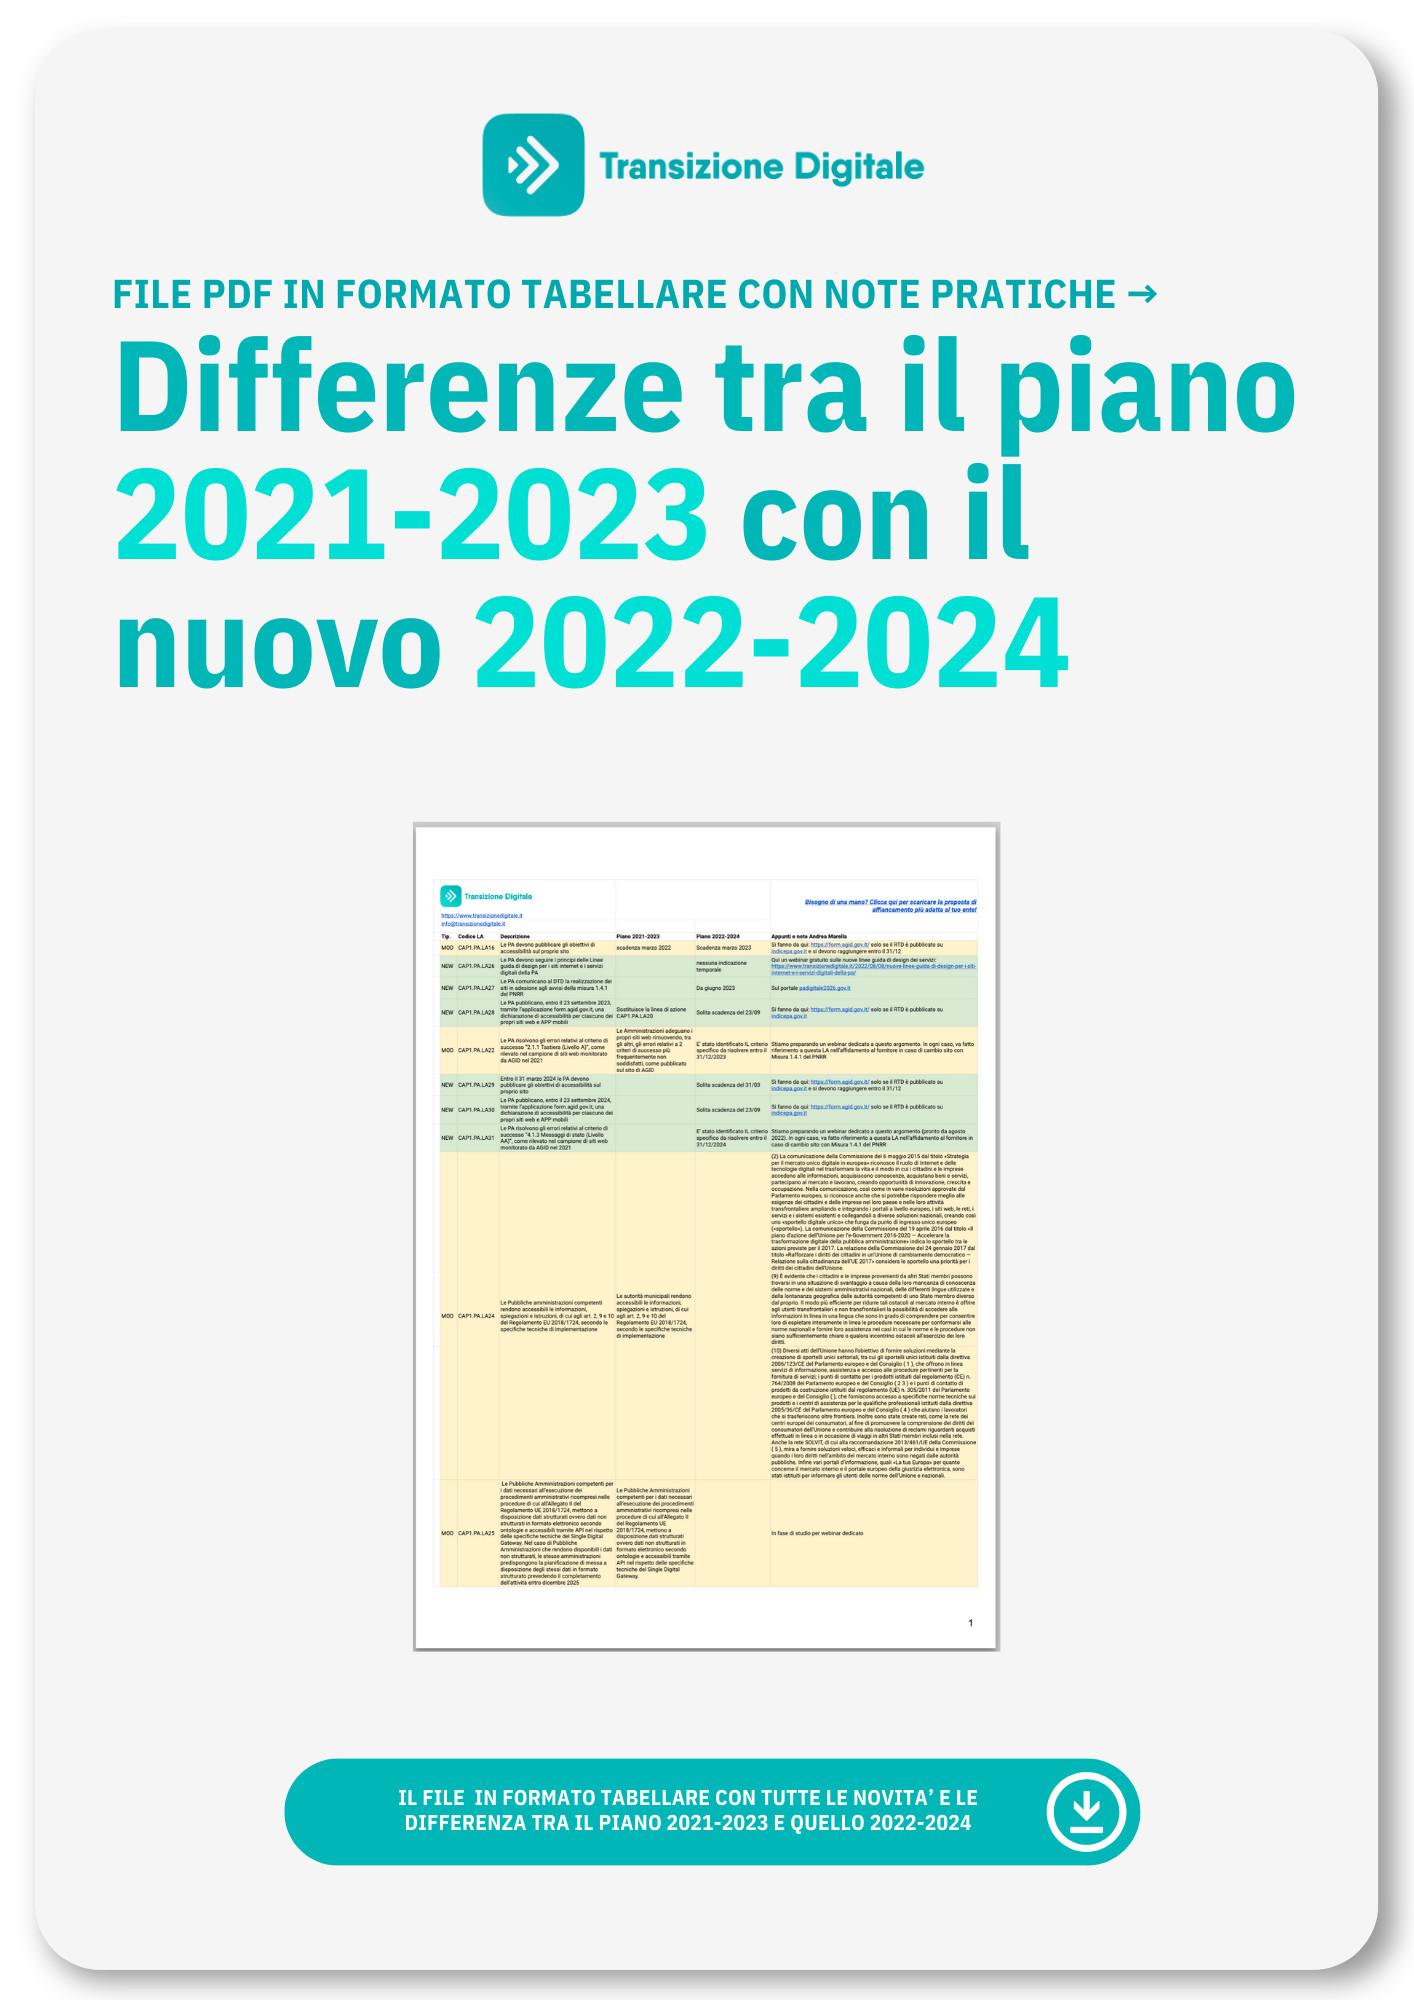 Differenze Tra Piano Triennale Transizione Digitale 2021 2023 E 2022 2024